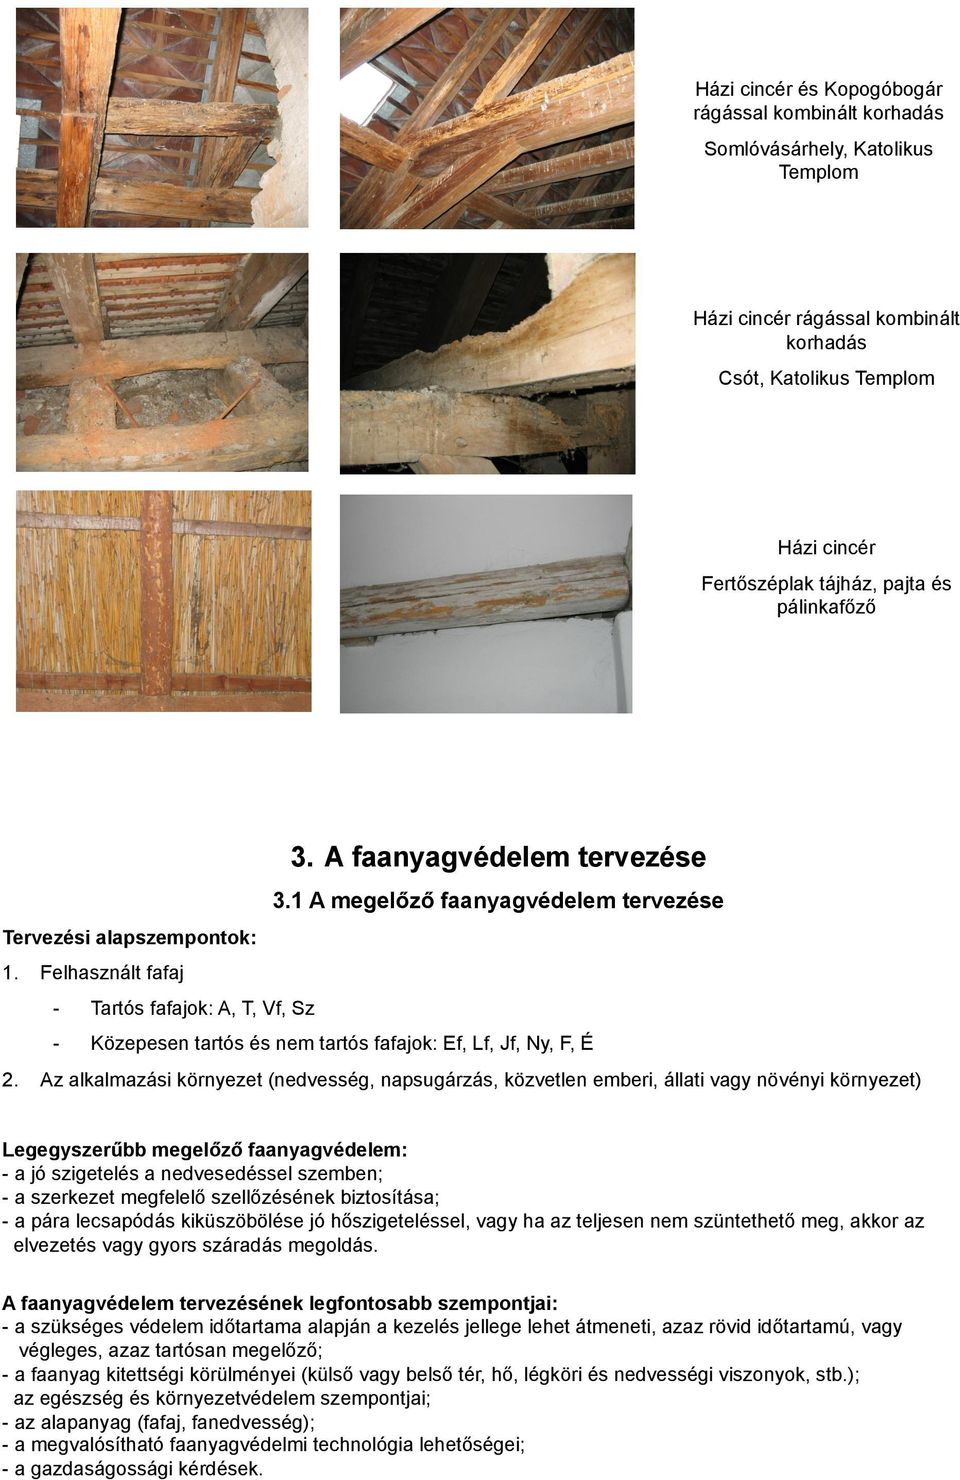 Faszerkezetek és szerkezeti faanyagok faanyagvédelmi problémái - PDF Free  Download